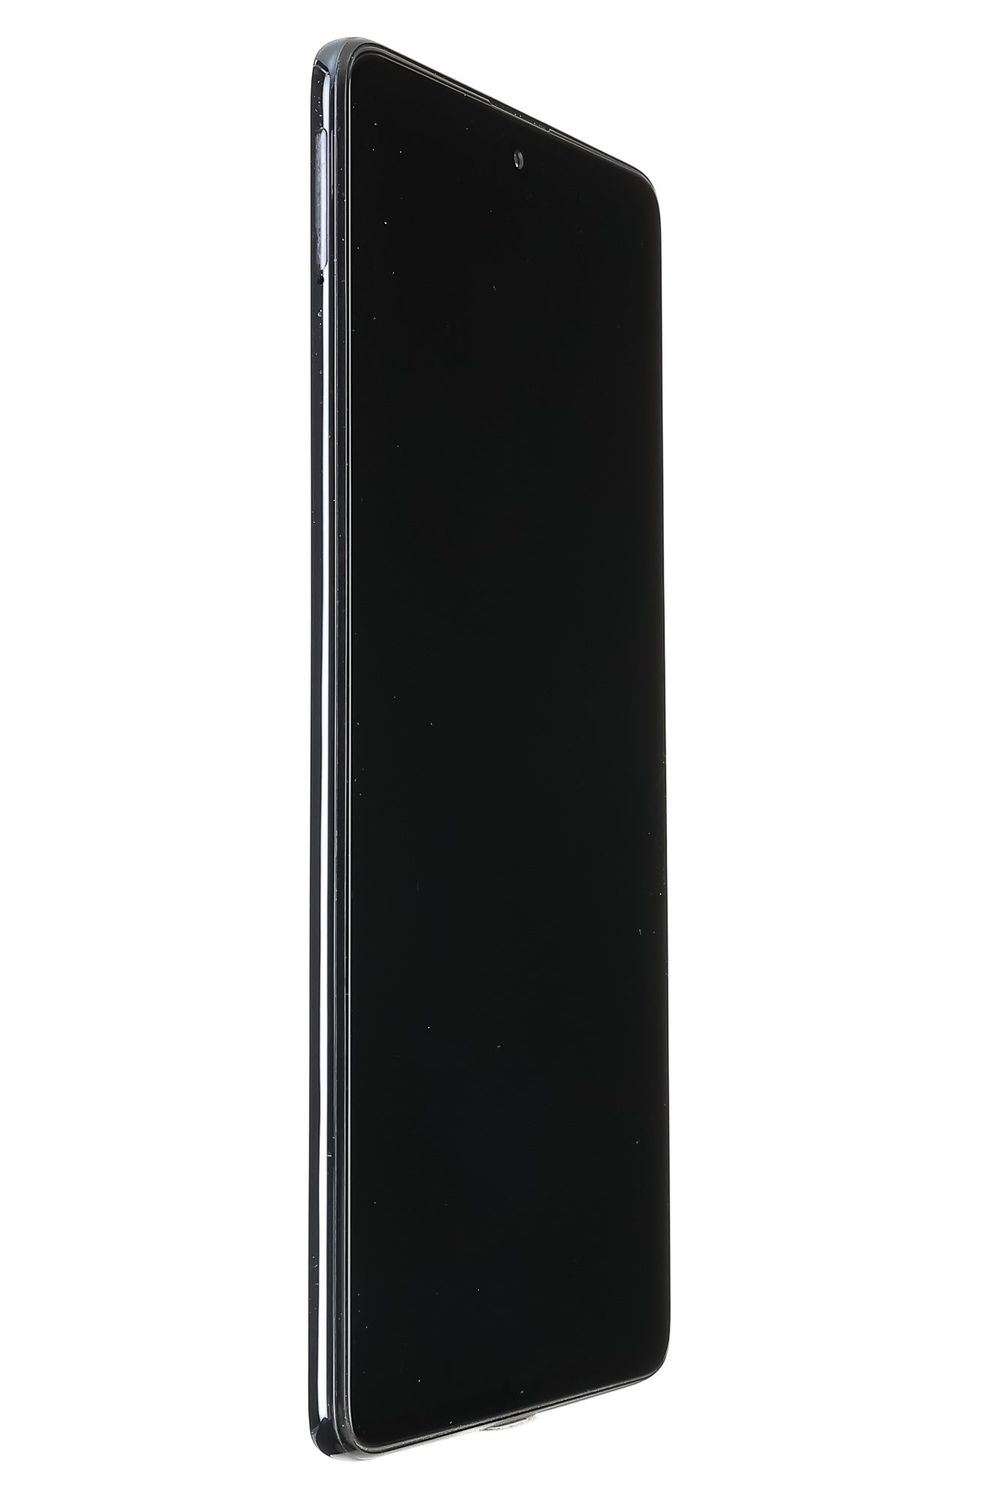 Telefon mobil Samsung Galaxy A71, Black, 128 GB, Foarte Bun